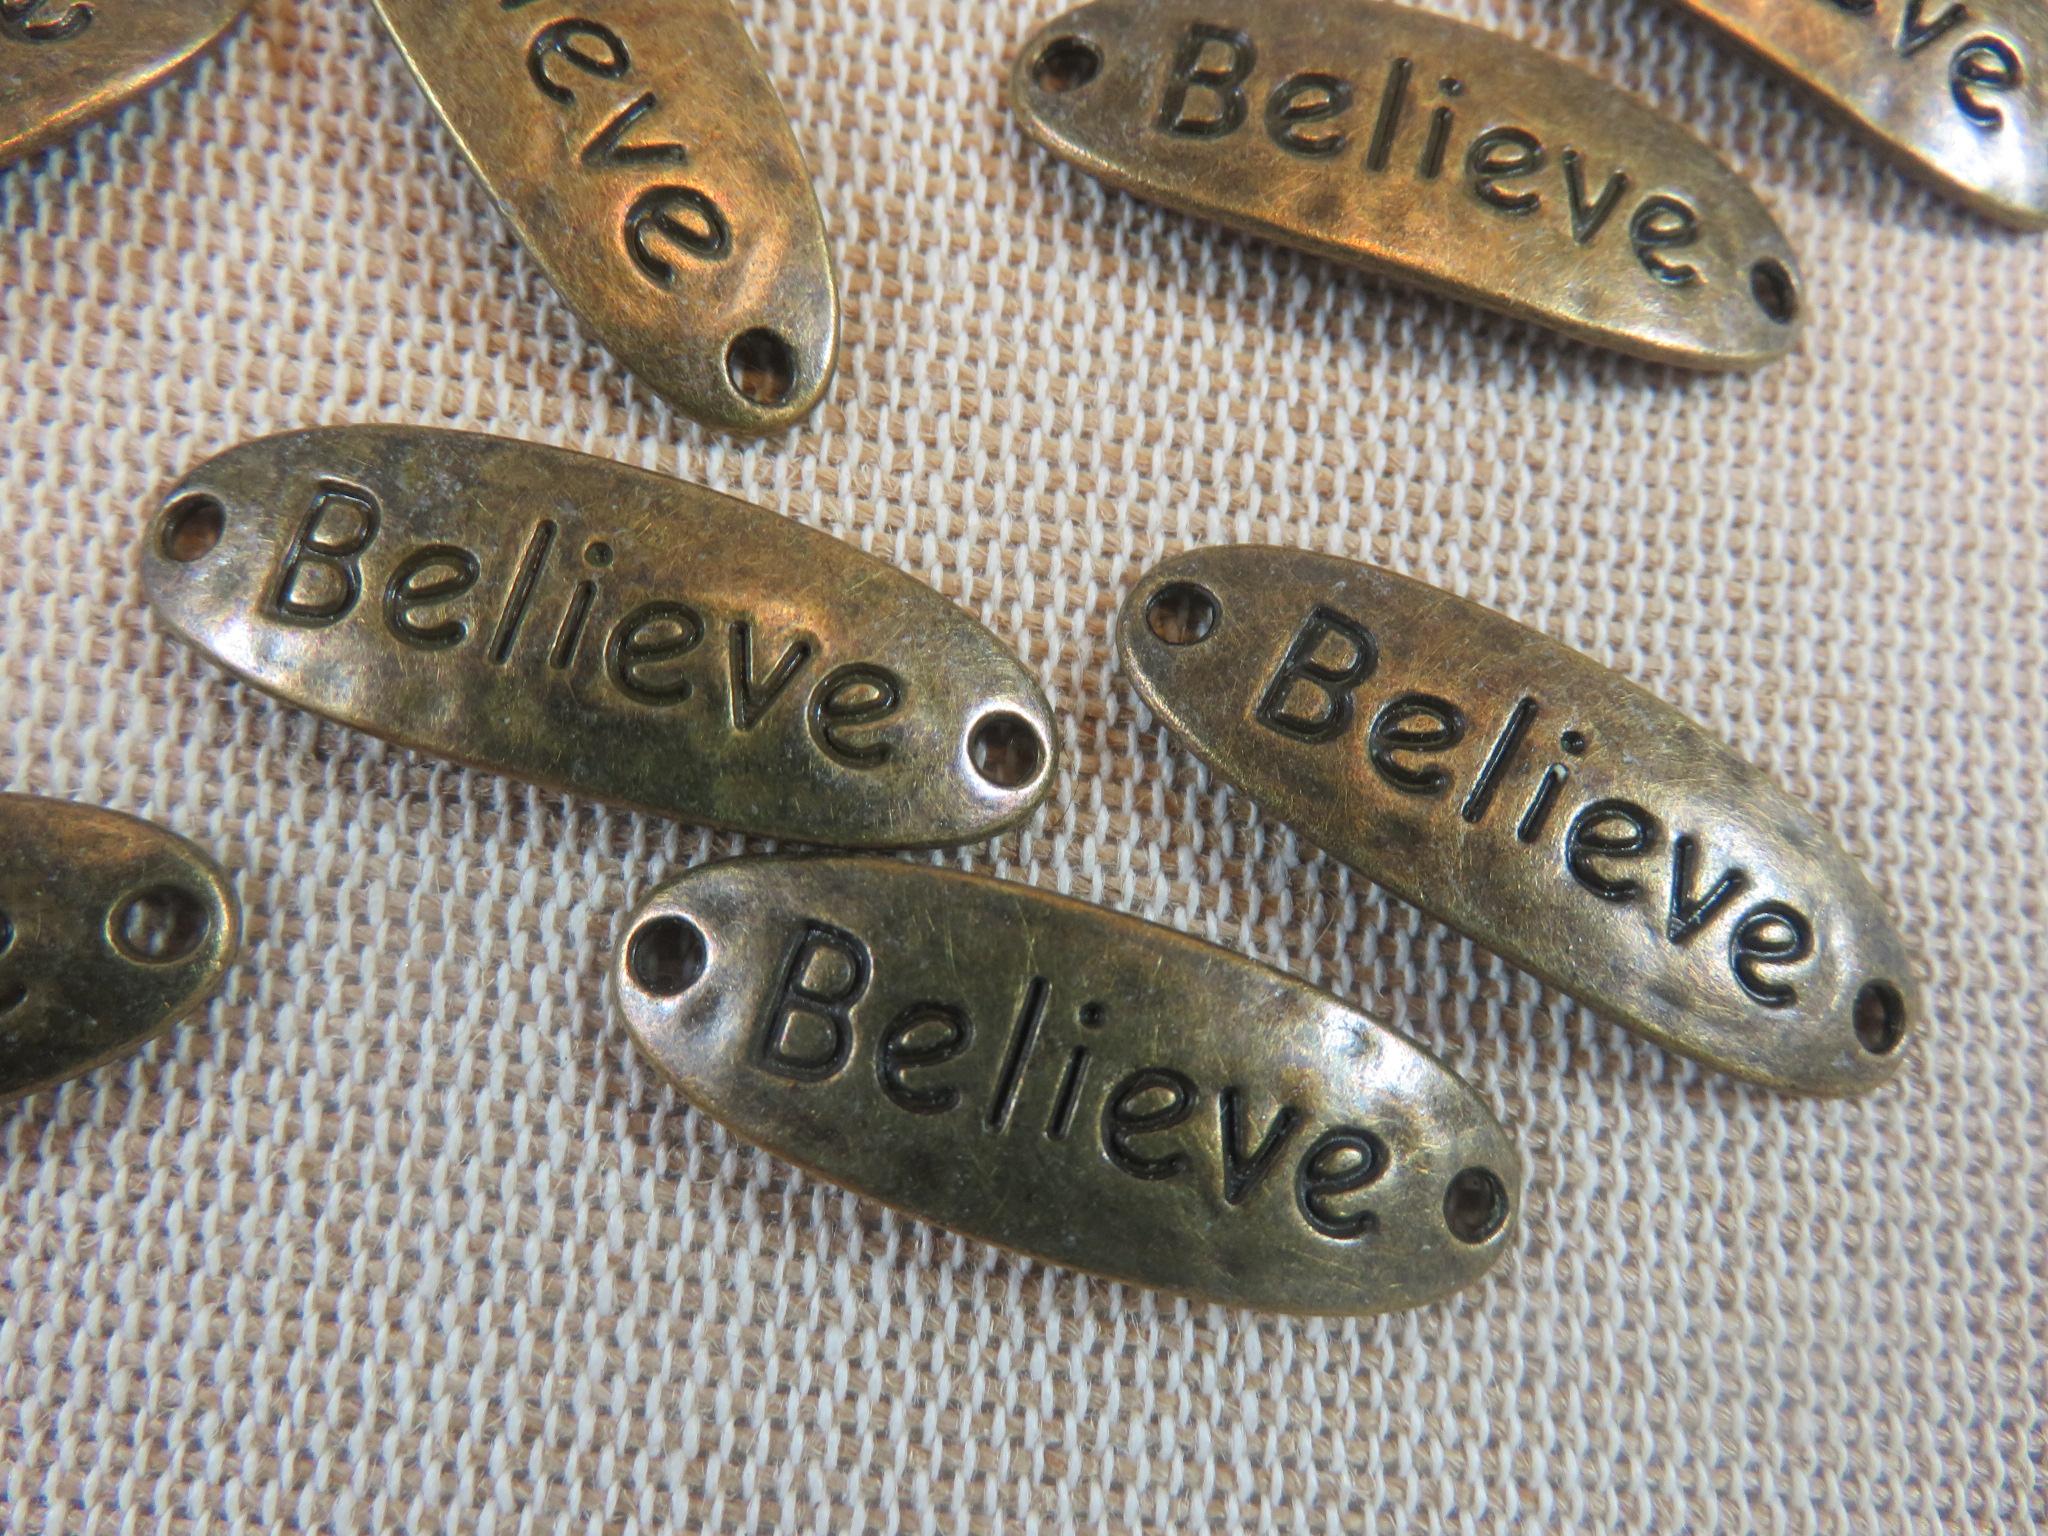 Connecteur gravé Believe bronze breloque martelé - lot de 5 pendentif